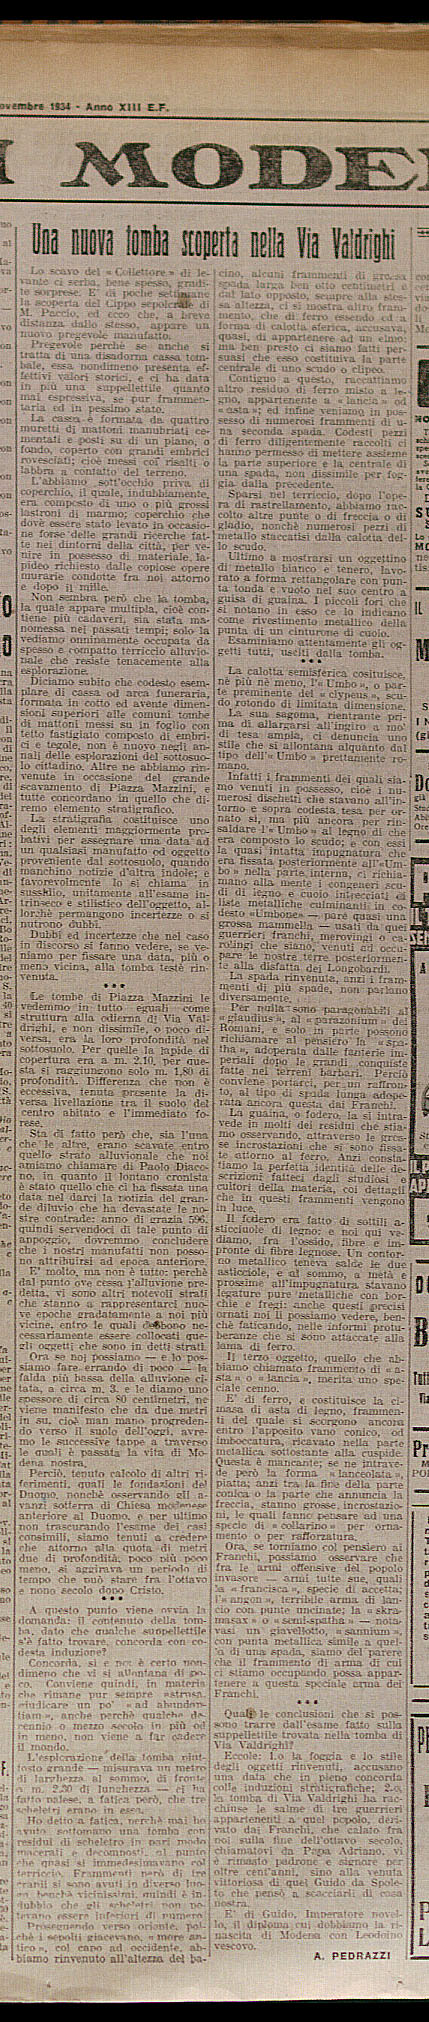 "Gazzetta dell’Emilia", 17-18 novembre 1934